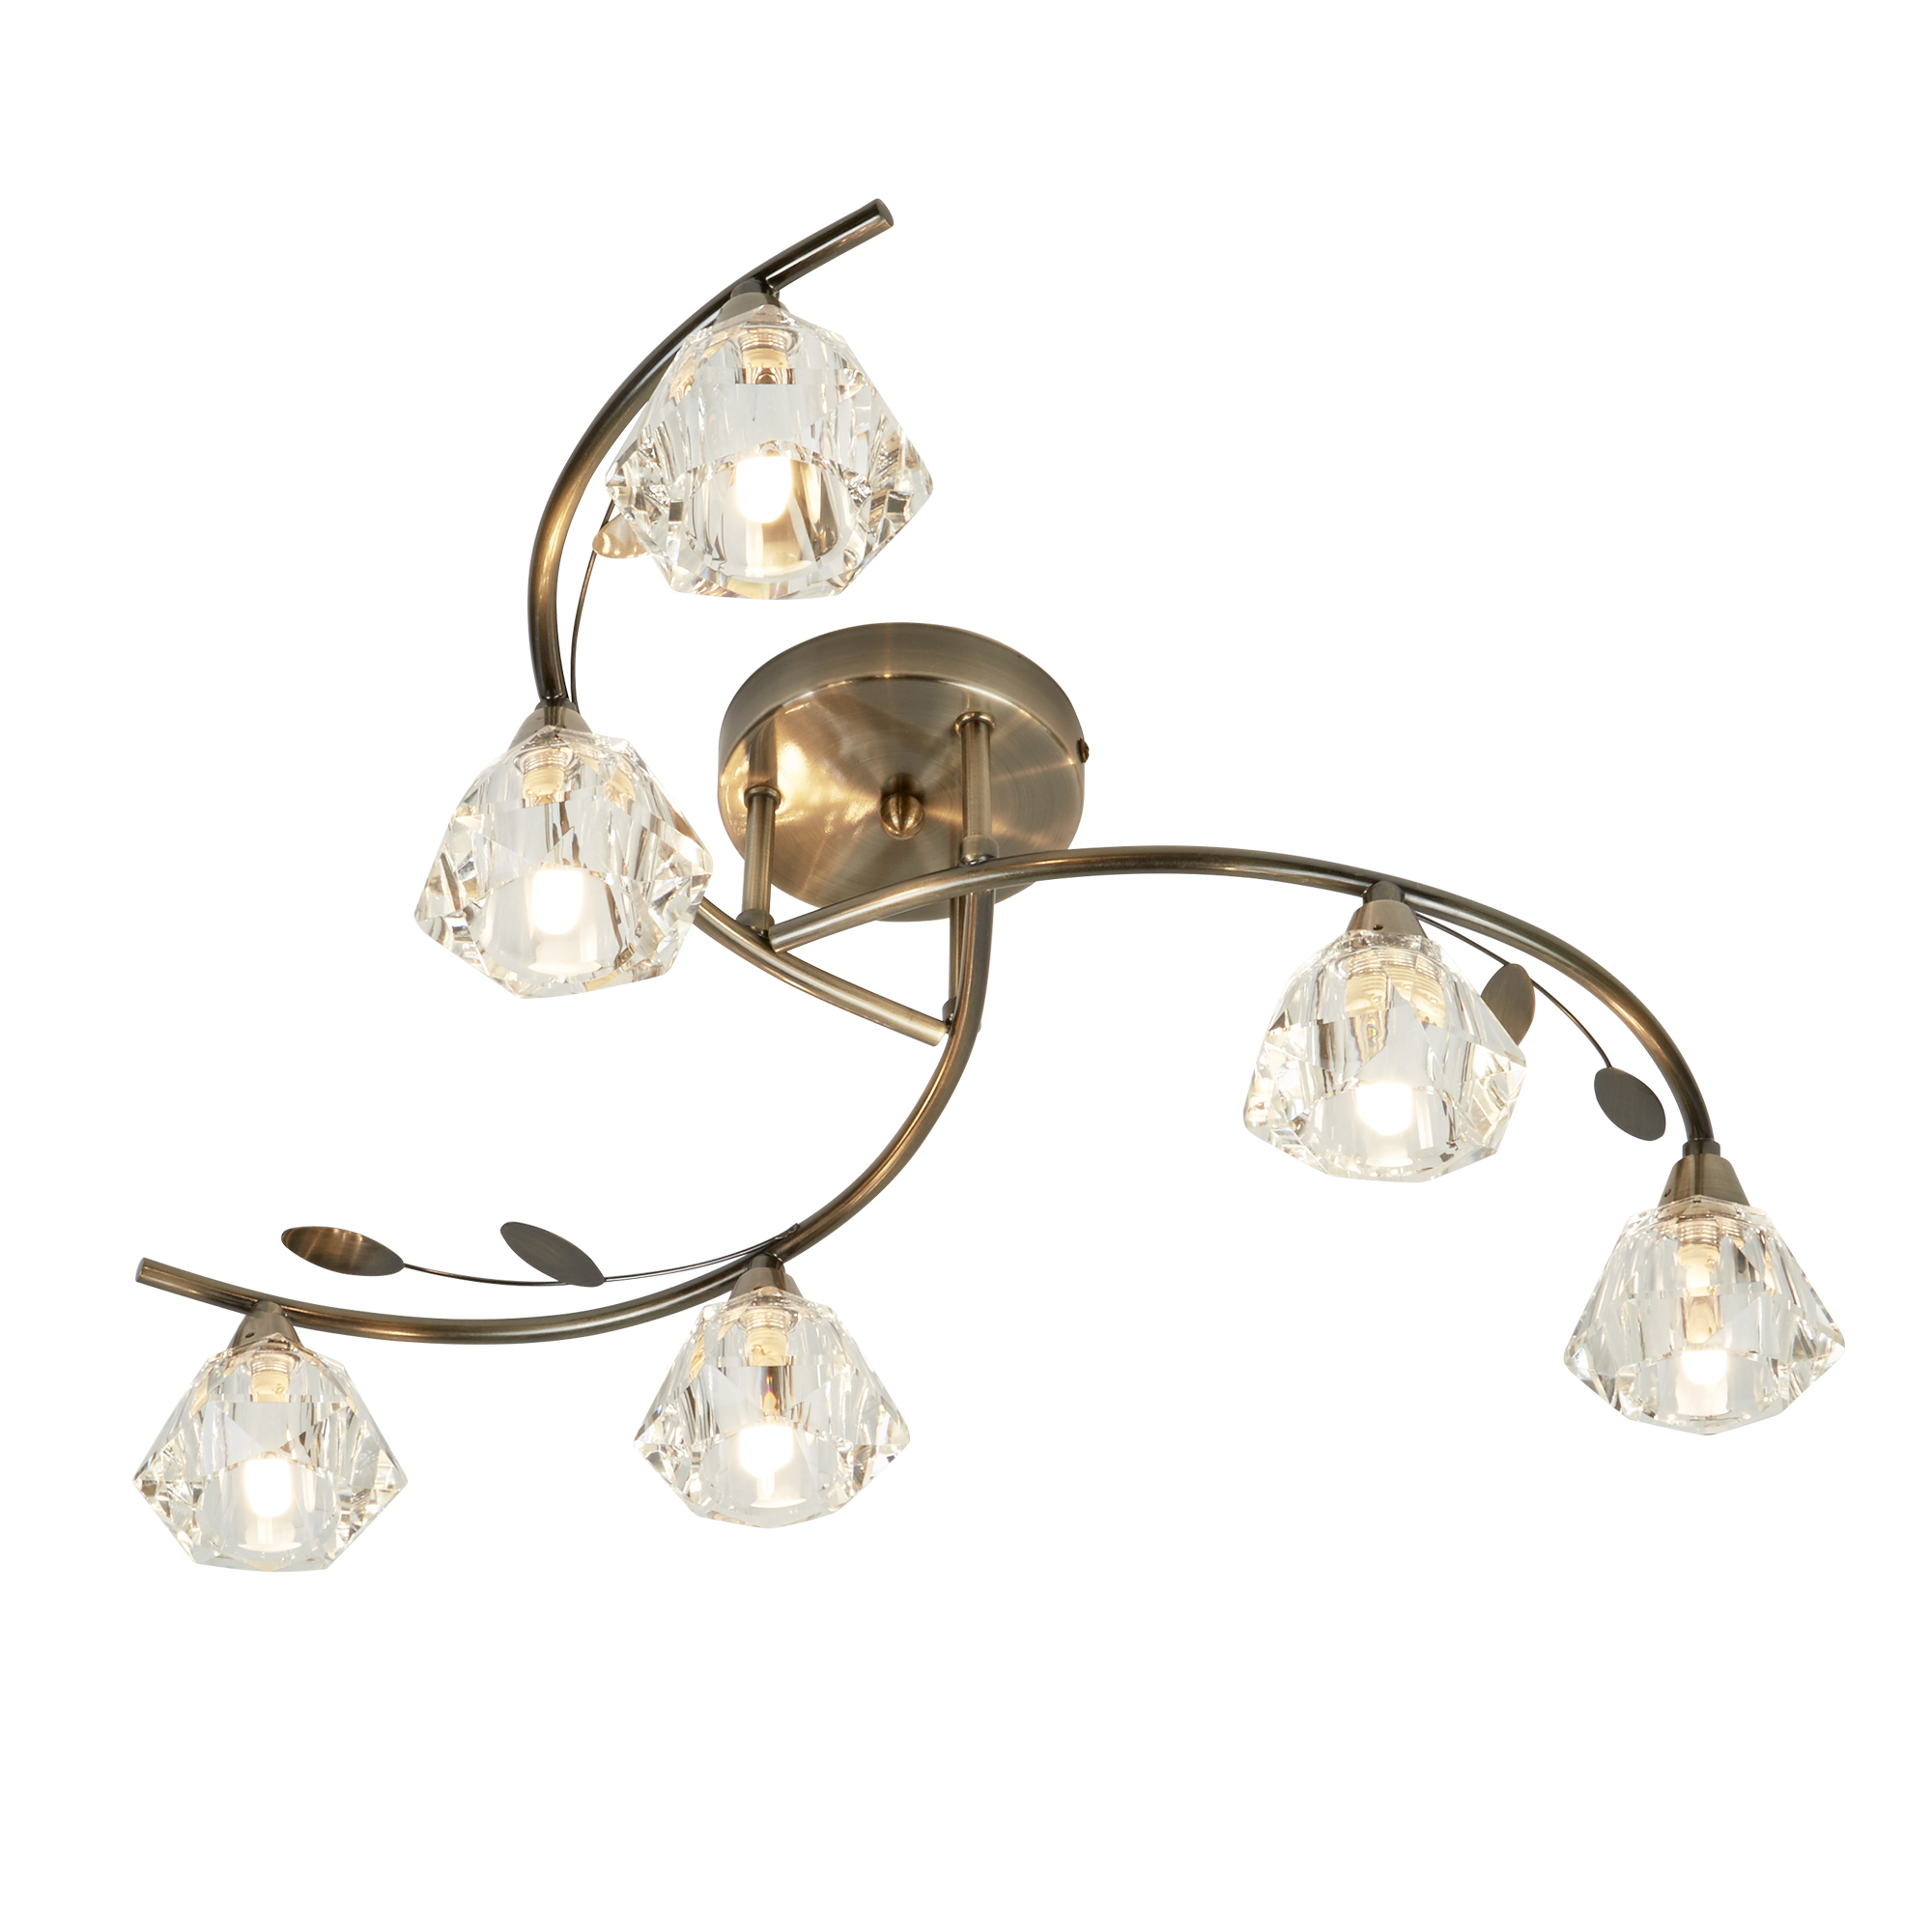 Sierra 6Lt Semi-Flush Ceiling Light - Antique Brass & Glass